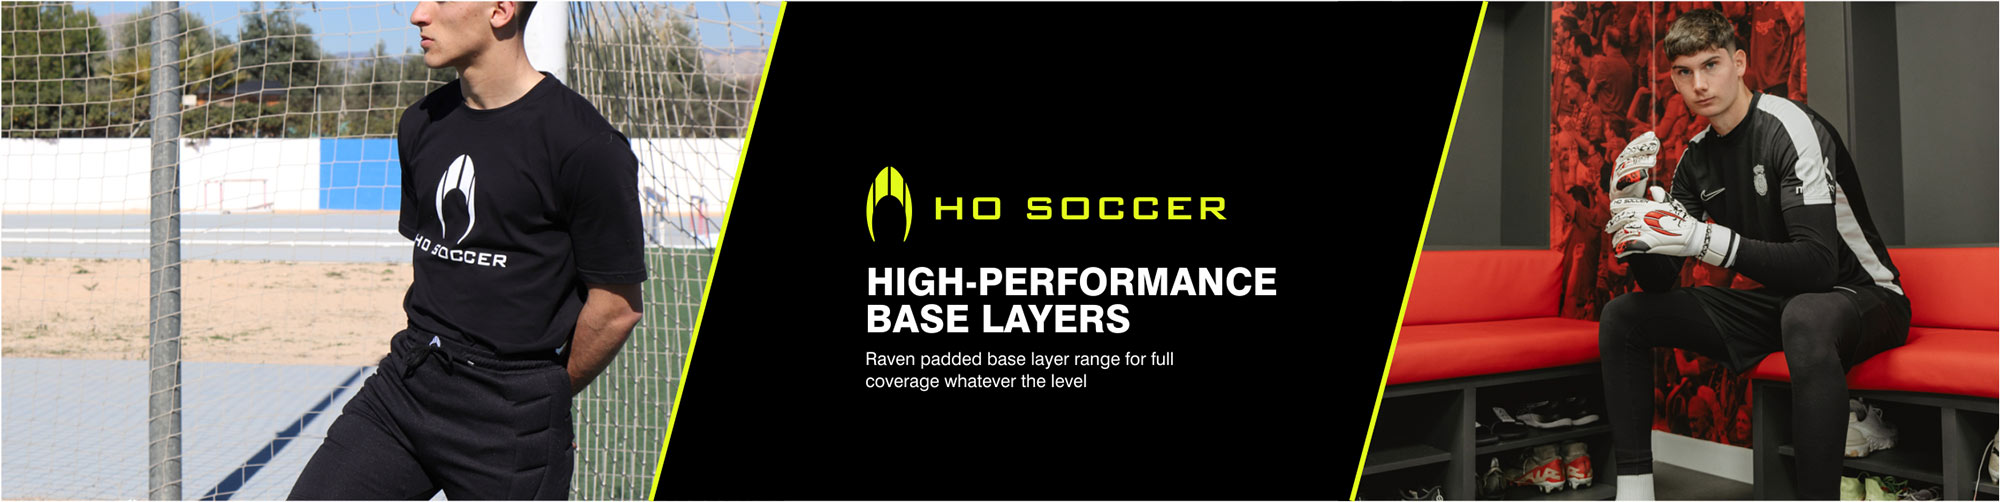 HO Soccer RAVEN padded Goalkeeper base layer